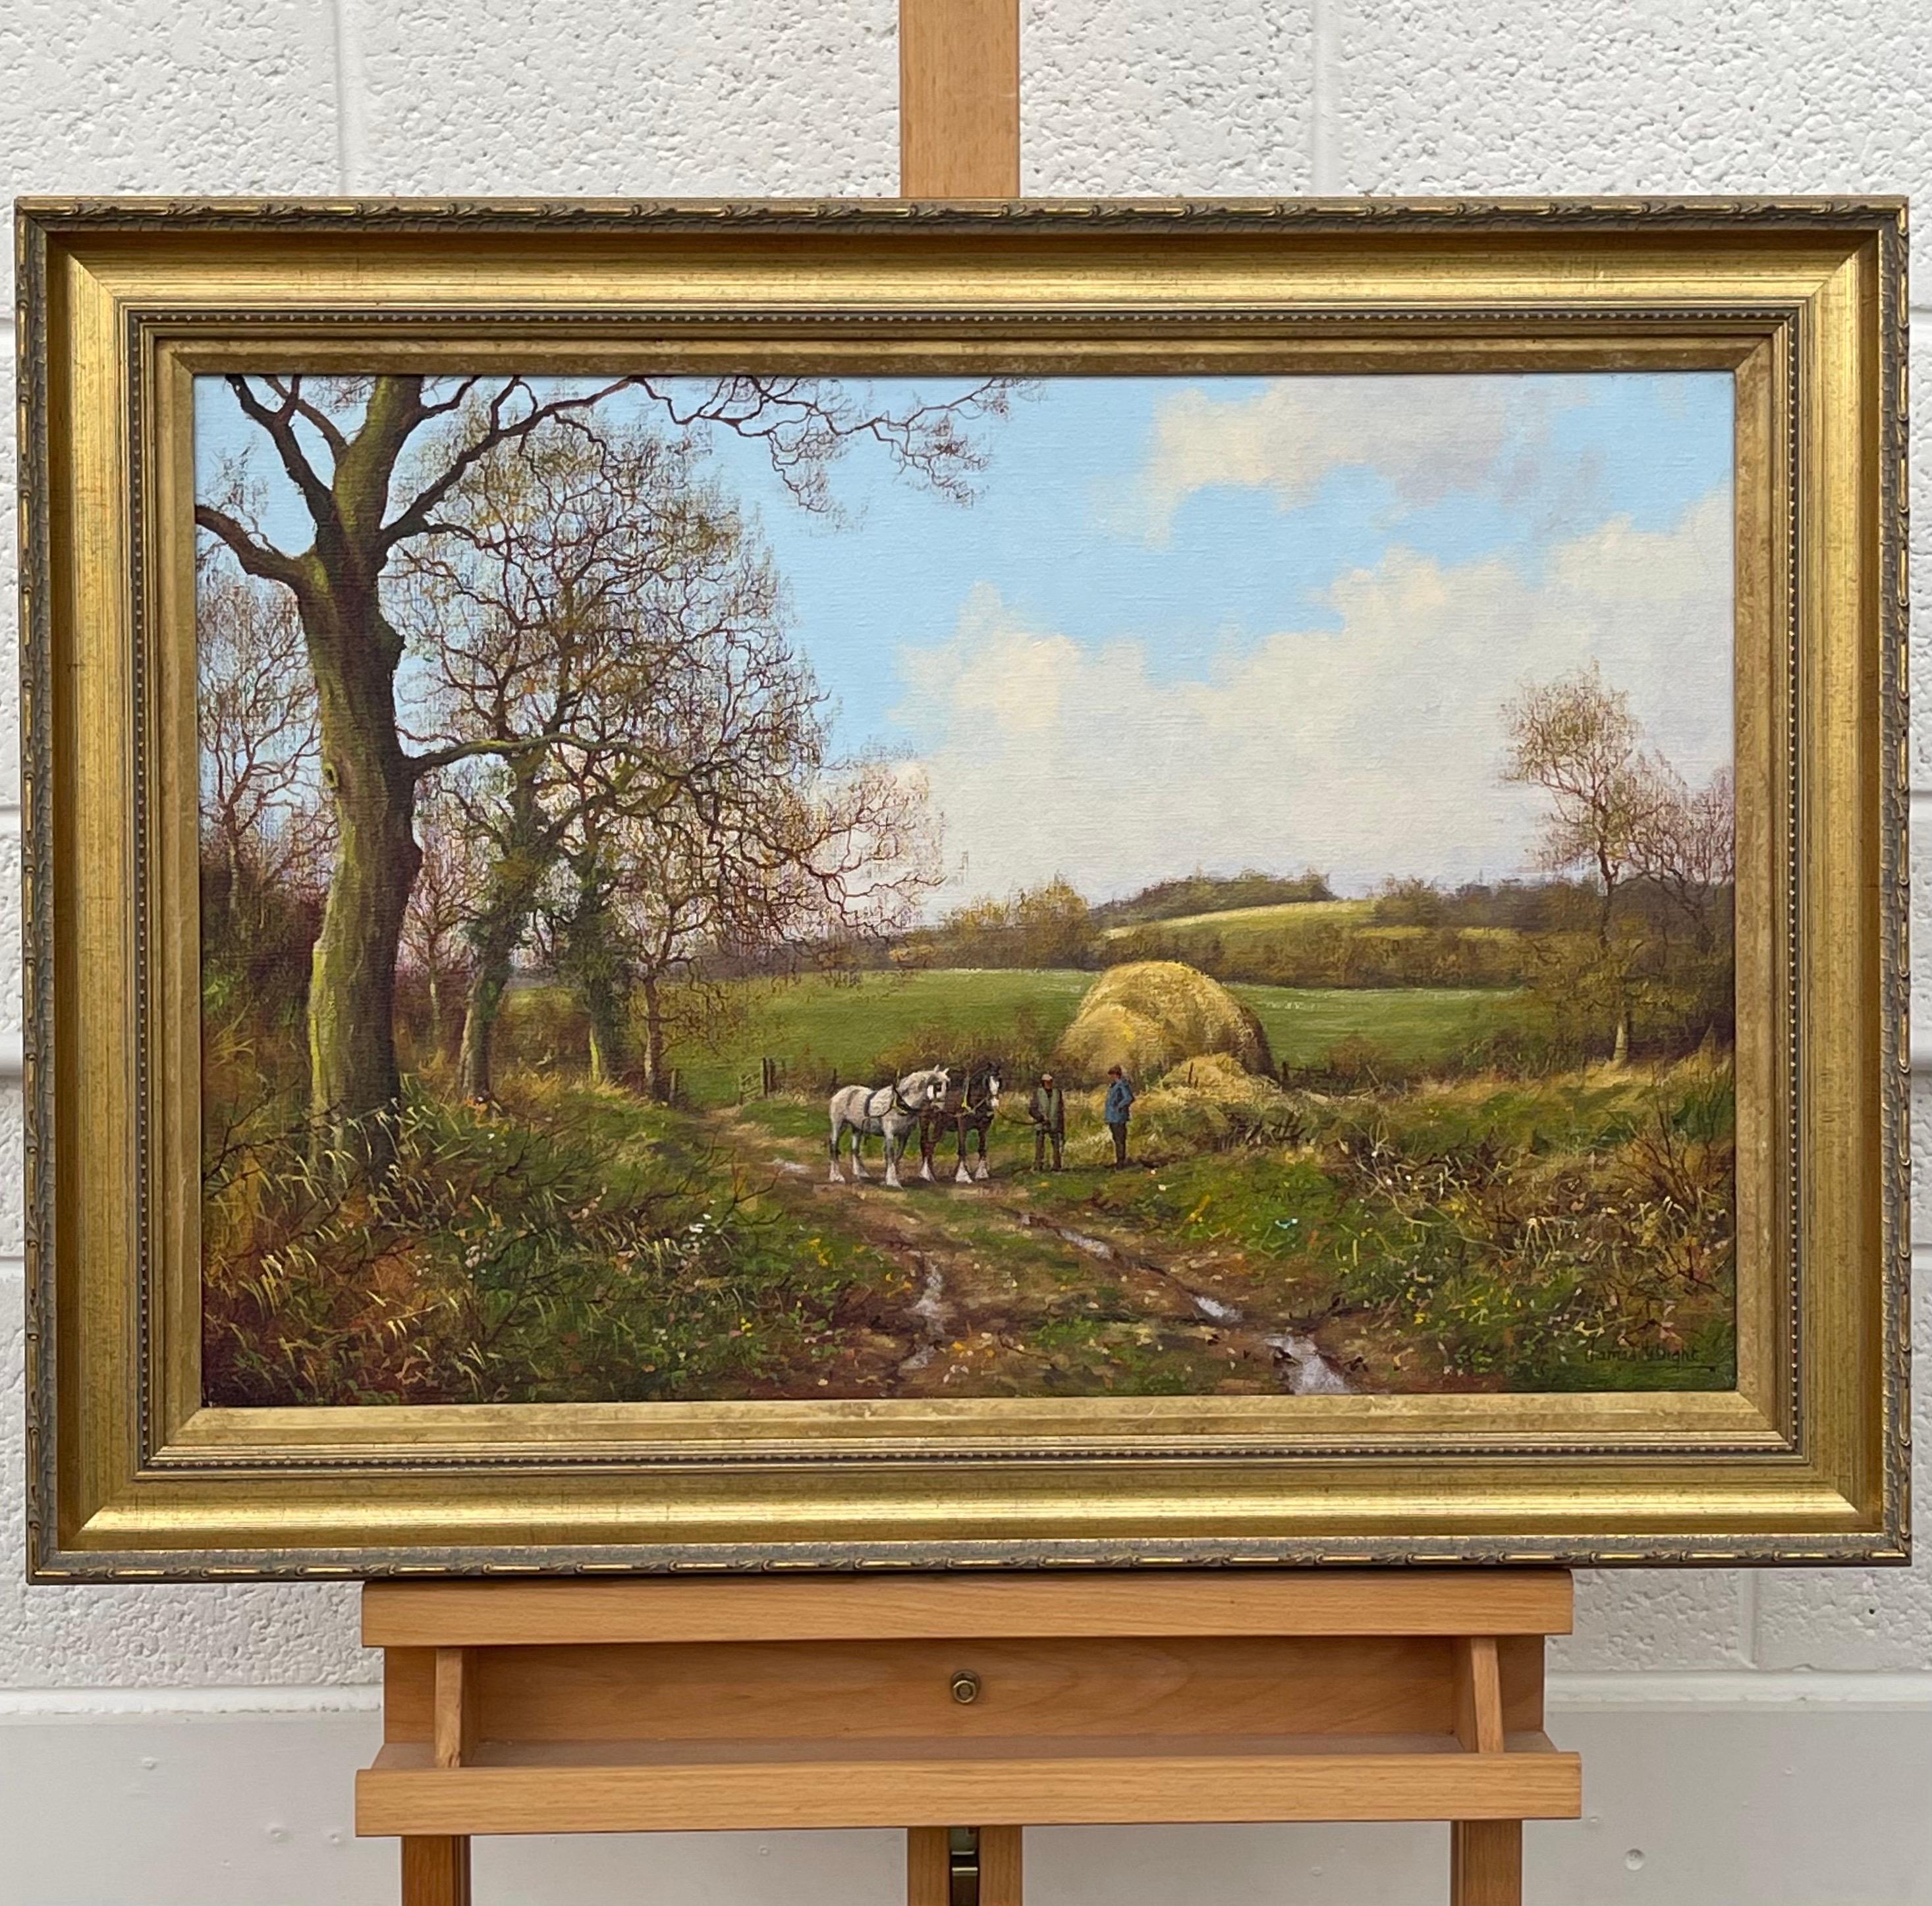 Chevaux et laboureurs dans la campagne anglaise par l'artiste paysagiste réaliste - Romantique Painting par James Wright